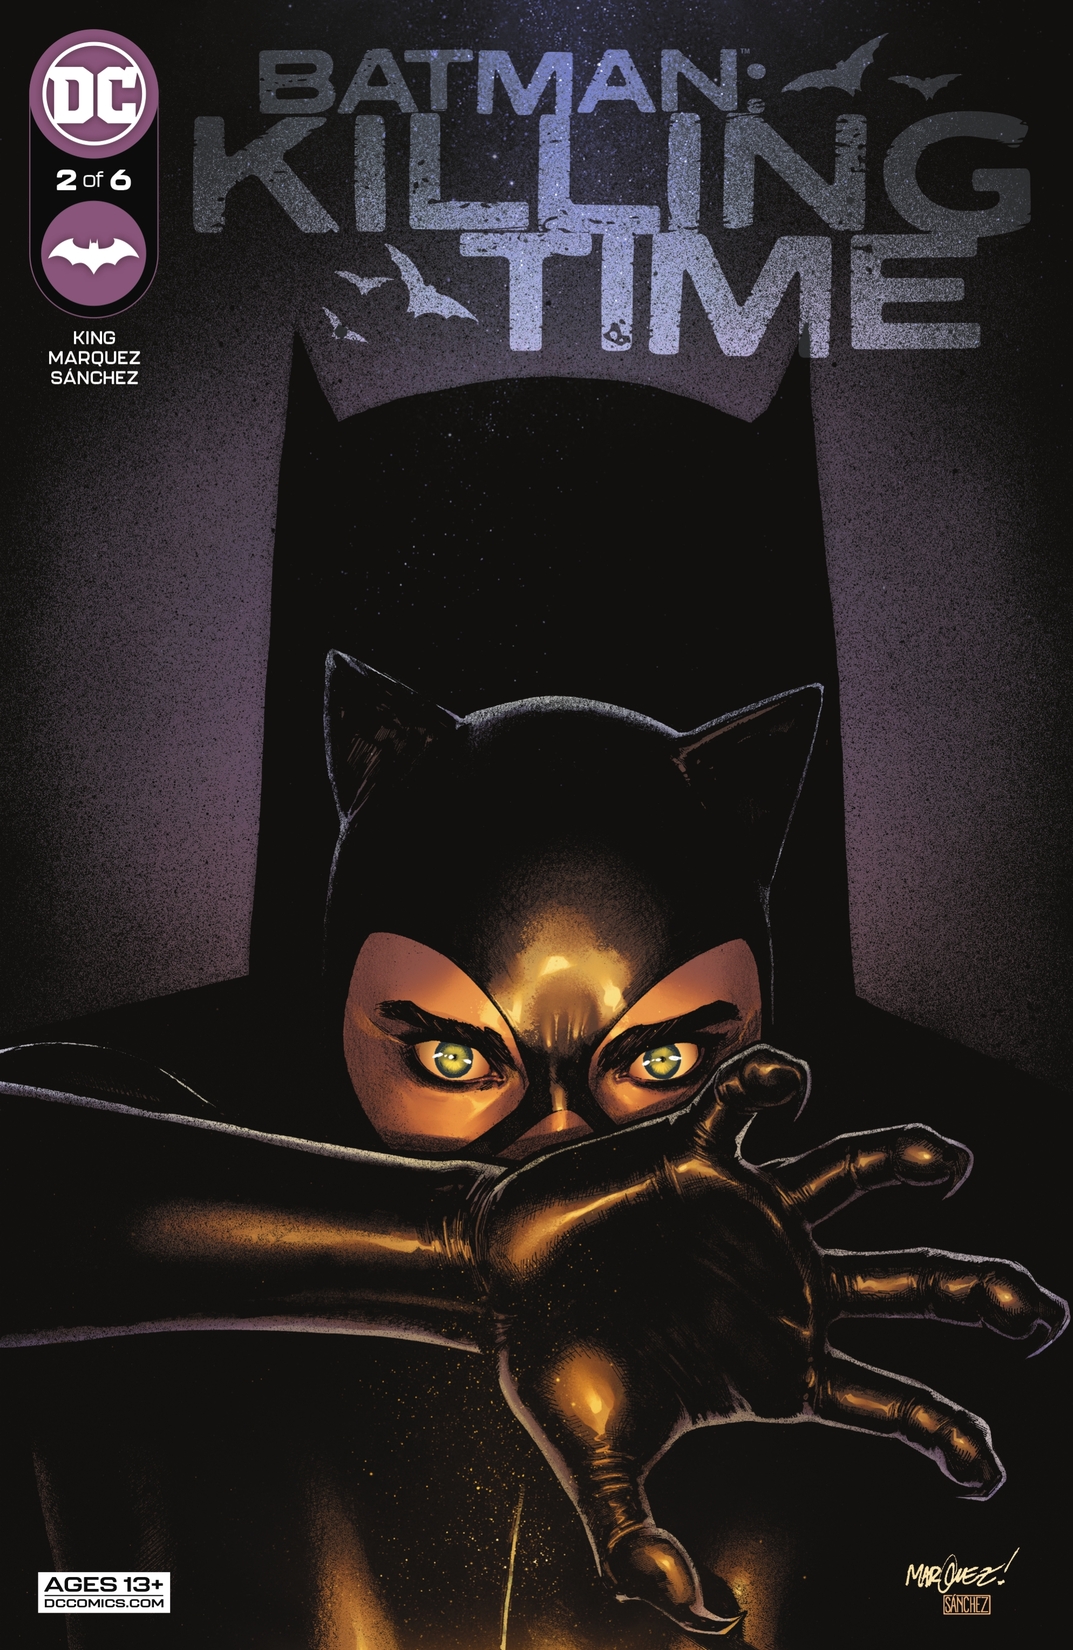 Batman: Killing Time #2 preview images